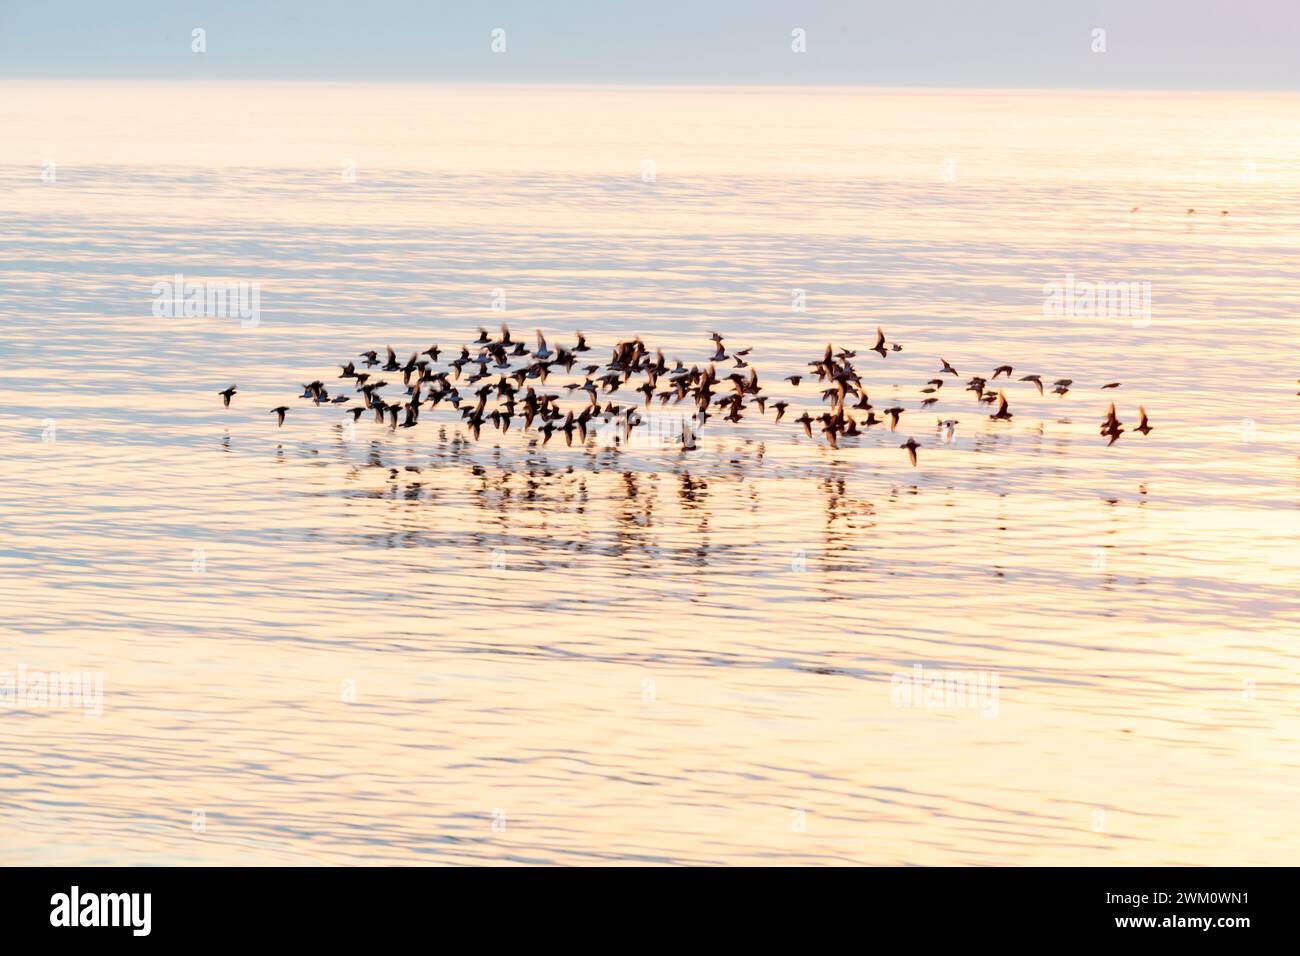 Una scena quasi meditativa di un gruppo di uccelli che volano molto velocemente e in piano sul mare calmo mentre il sole si tuffa sotto l'orizzonte, un gruppo di uccelli si libra Foto Stock